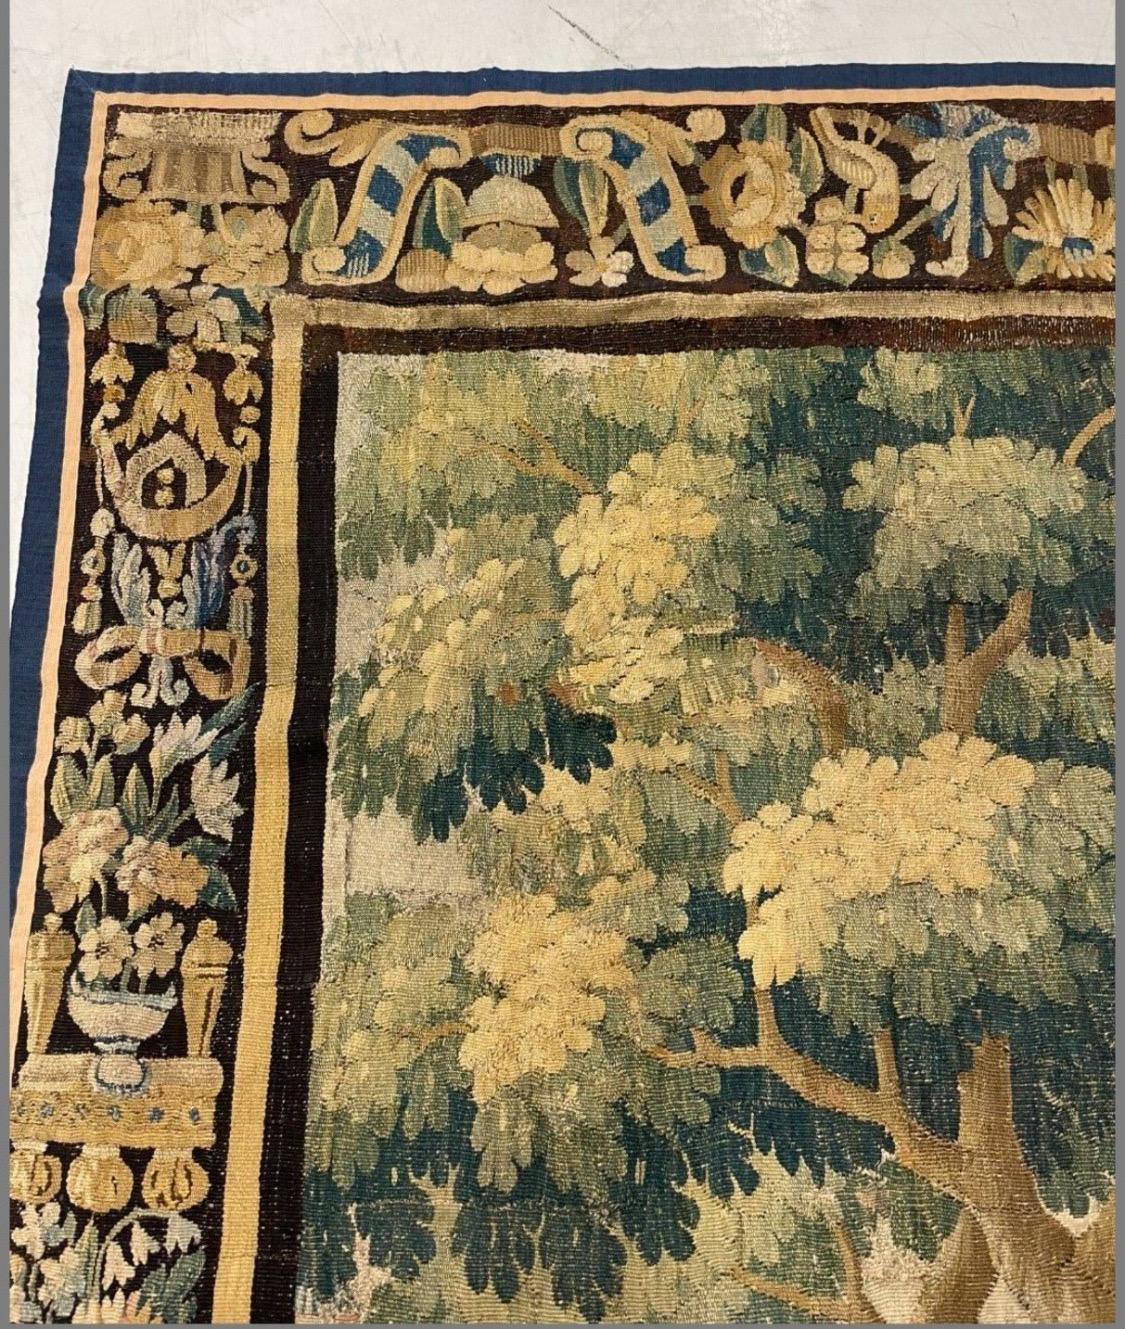 Dies ist eine wunderschöne antike frühen 17. Jahrhundert flämischen Verdure Landschaft Wandteppich zeigt eine schöne und reiche Sommer-Szene von einer Landschaft mit üppigen Bäumen und Vegetation, und Vögel mit verzierten Gärten und ein Schloss in